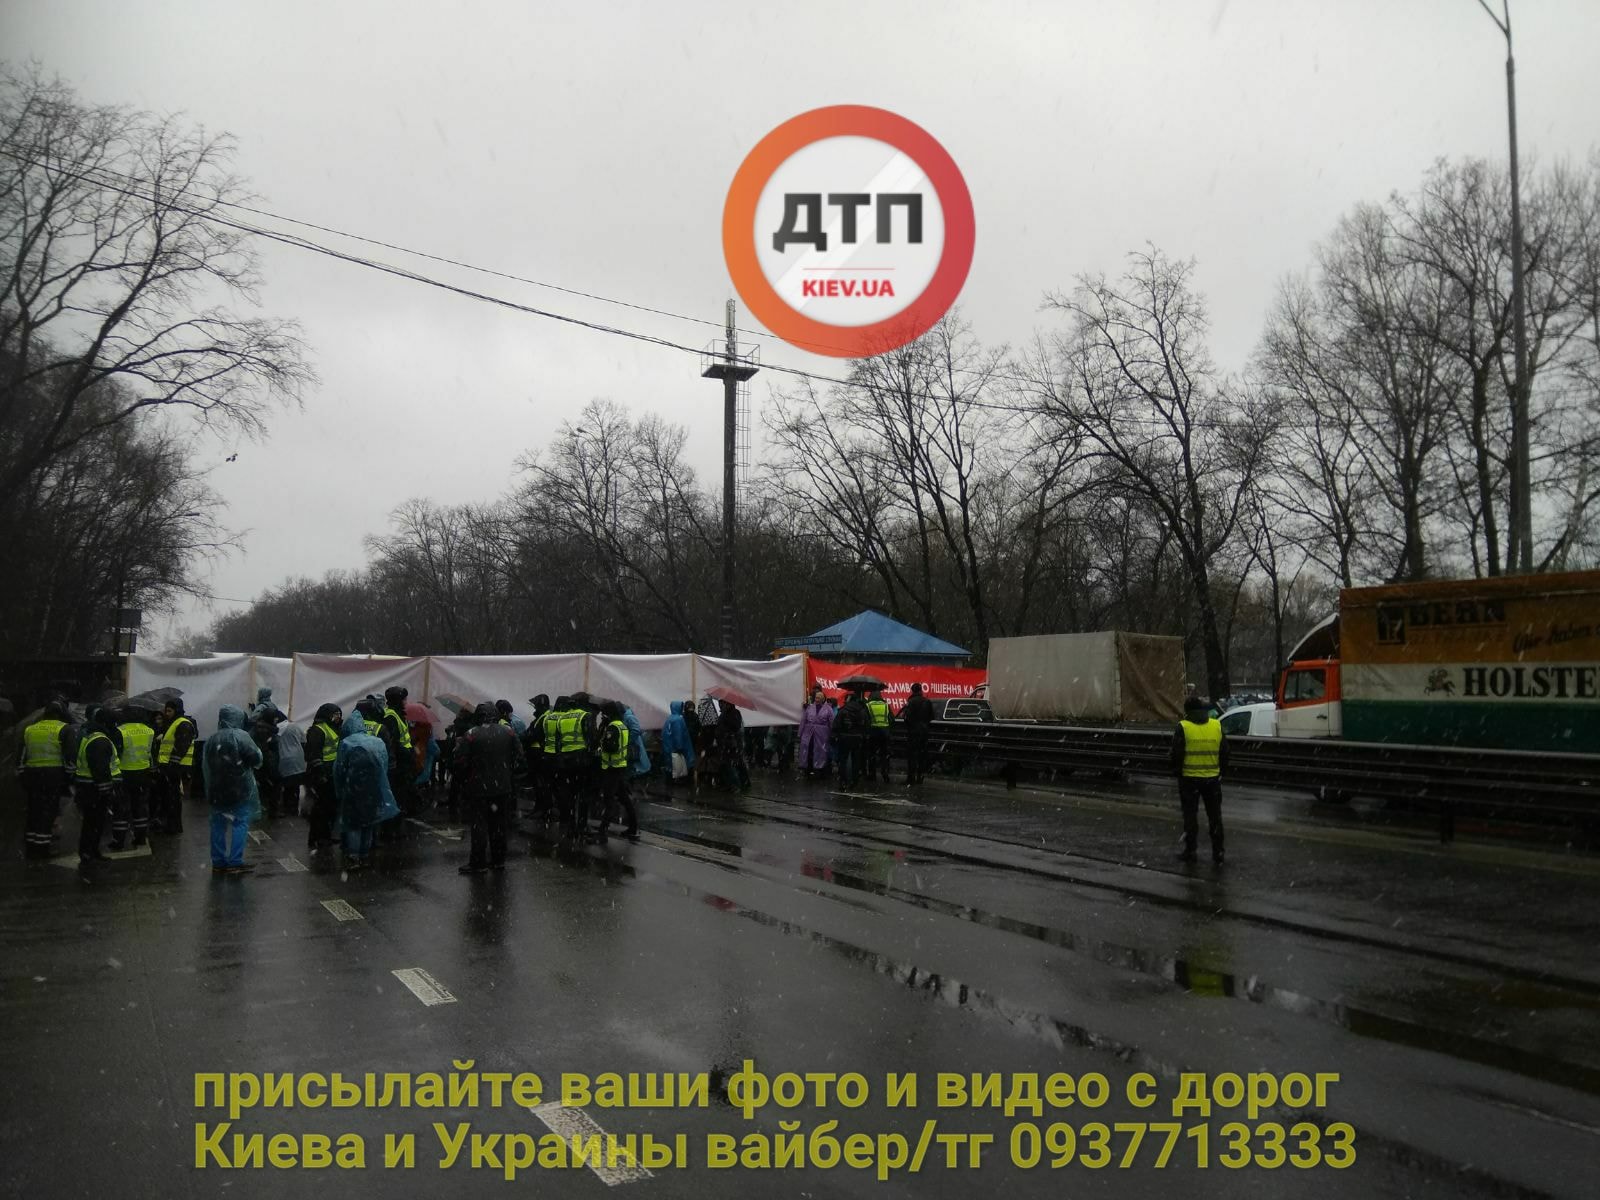 Автоновини: Одеську трасу під Києвом паралізувала акція протесту, фото — "Київ оперативний"